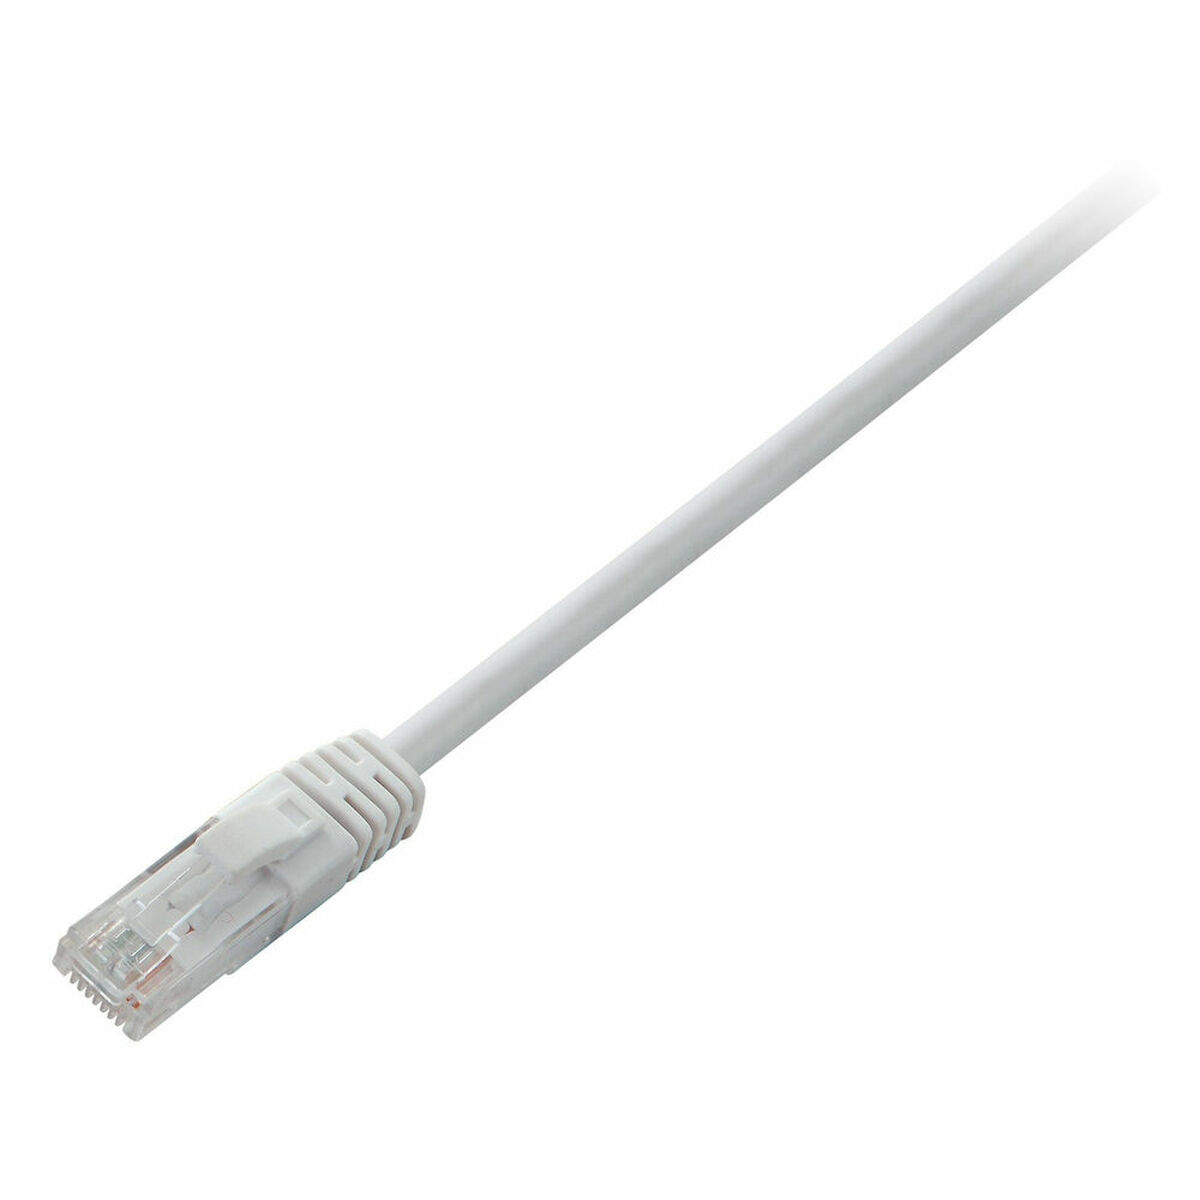 Жесткий сетевой кабель UTP кат. 6 V7 V7CAT6UTP-10M-WHT-1E 10 m Белый